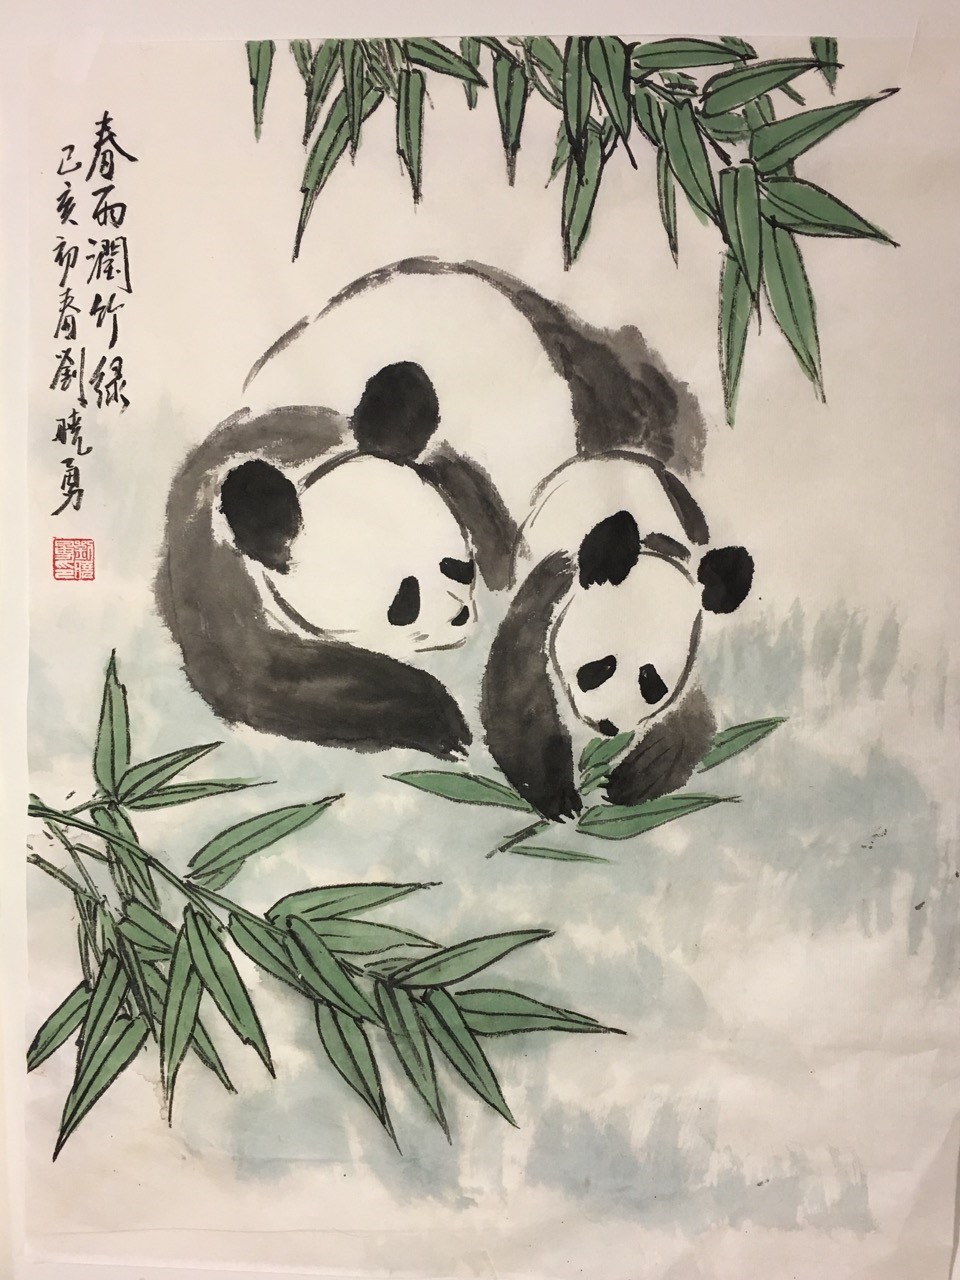 chinese panda painting